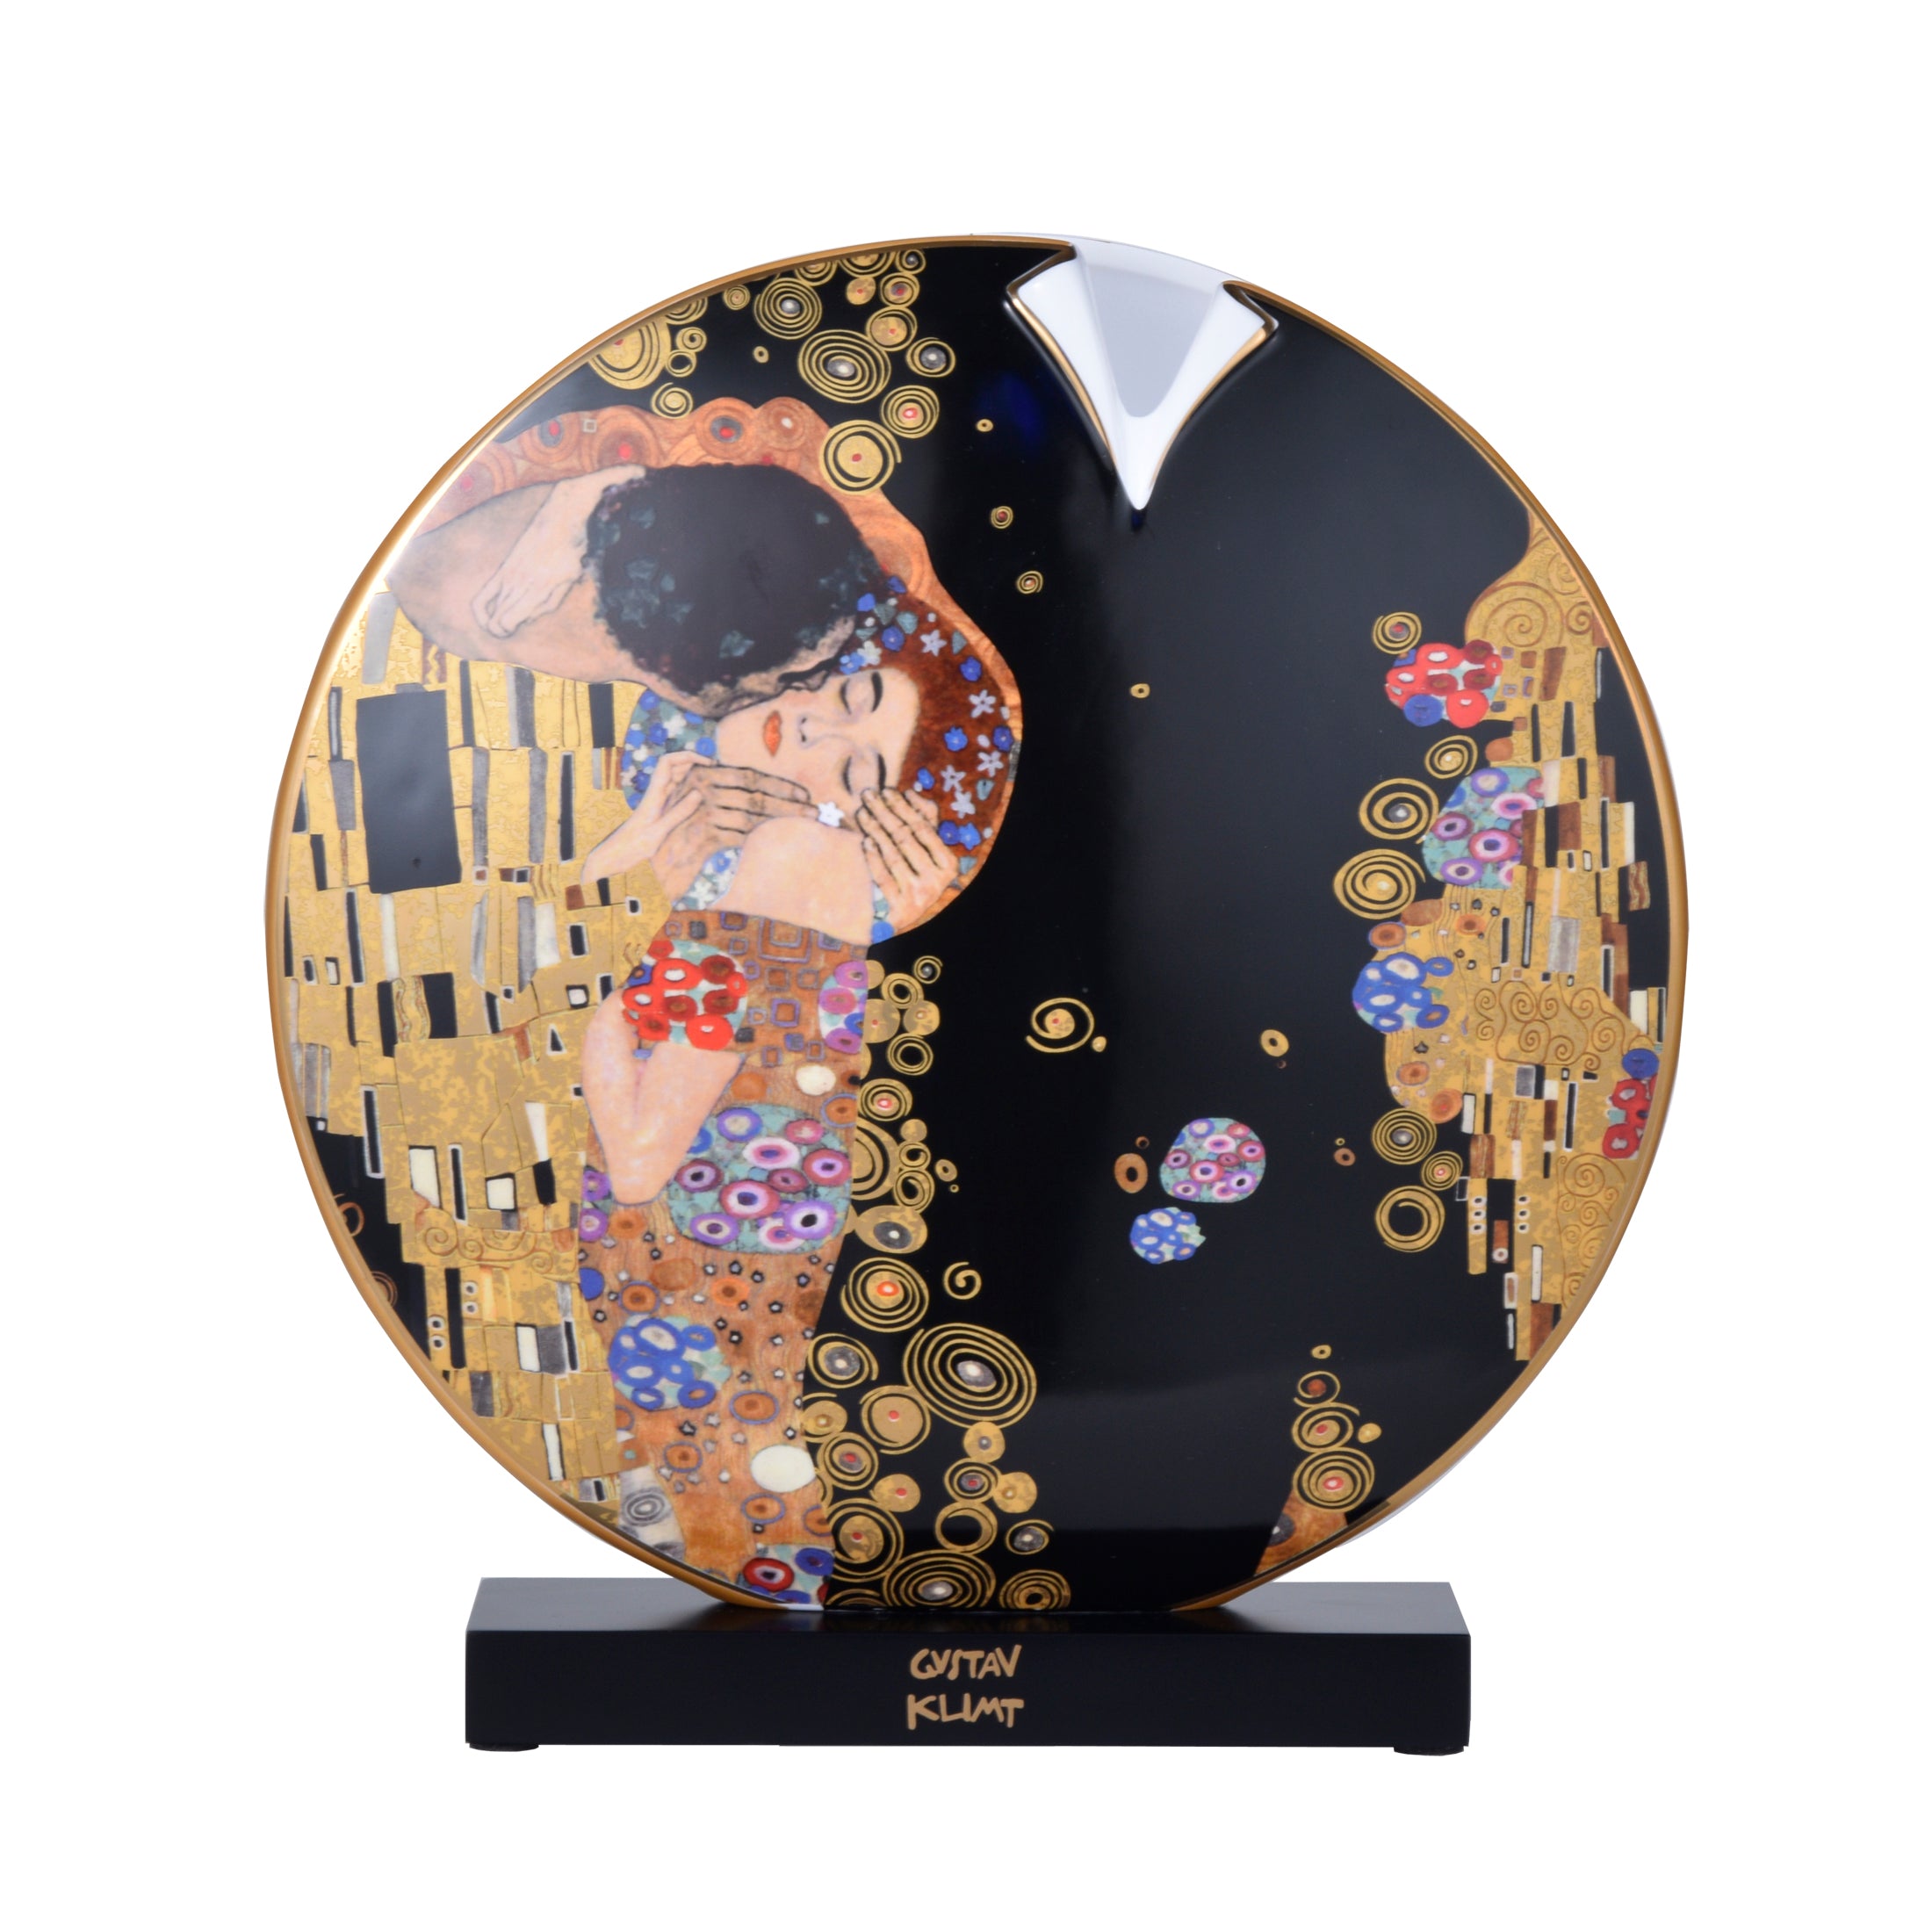 Goebel Artis Orbis Porzellan Vase 33,5cm "Der Kuss/Der Lebensbaum" von Gustav Klimt